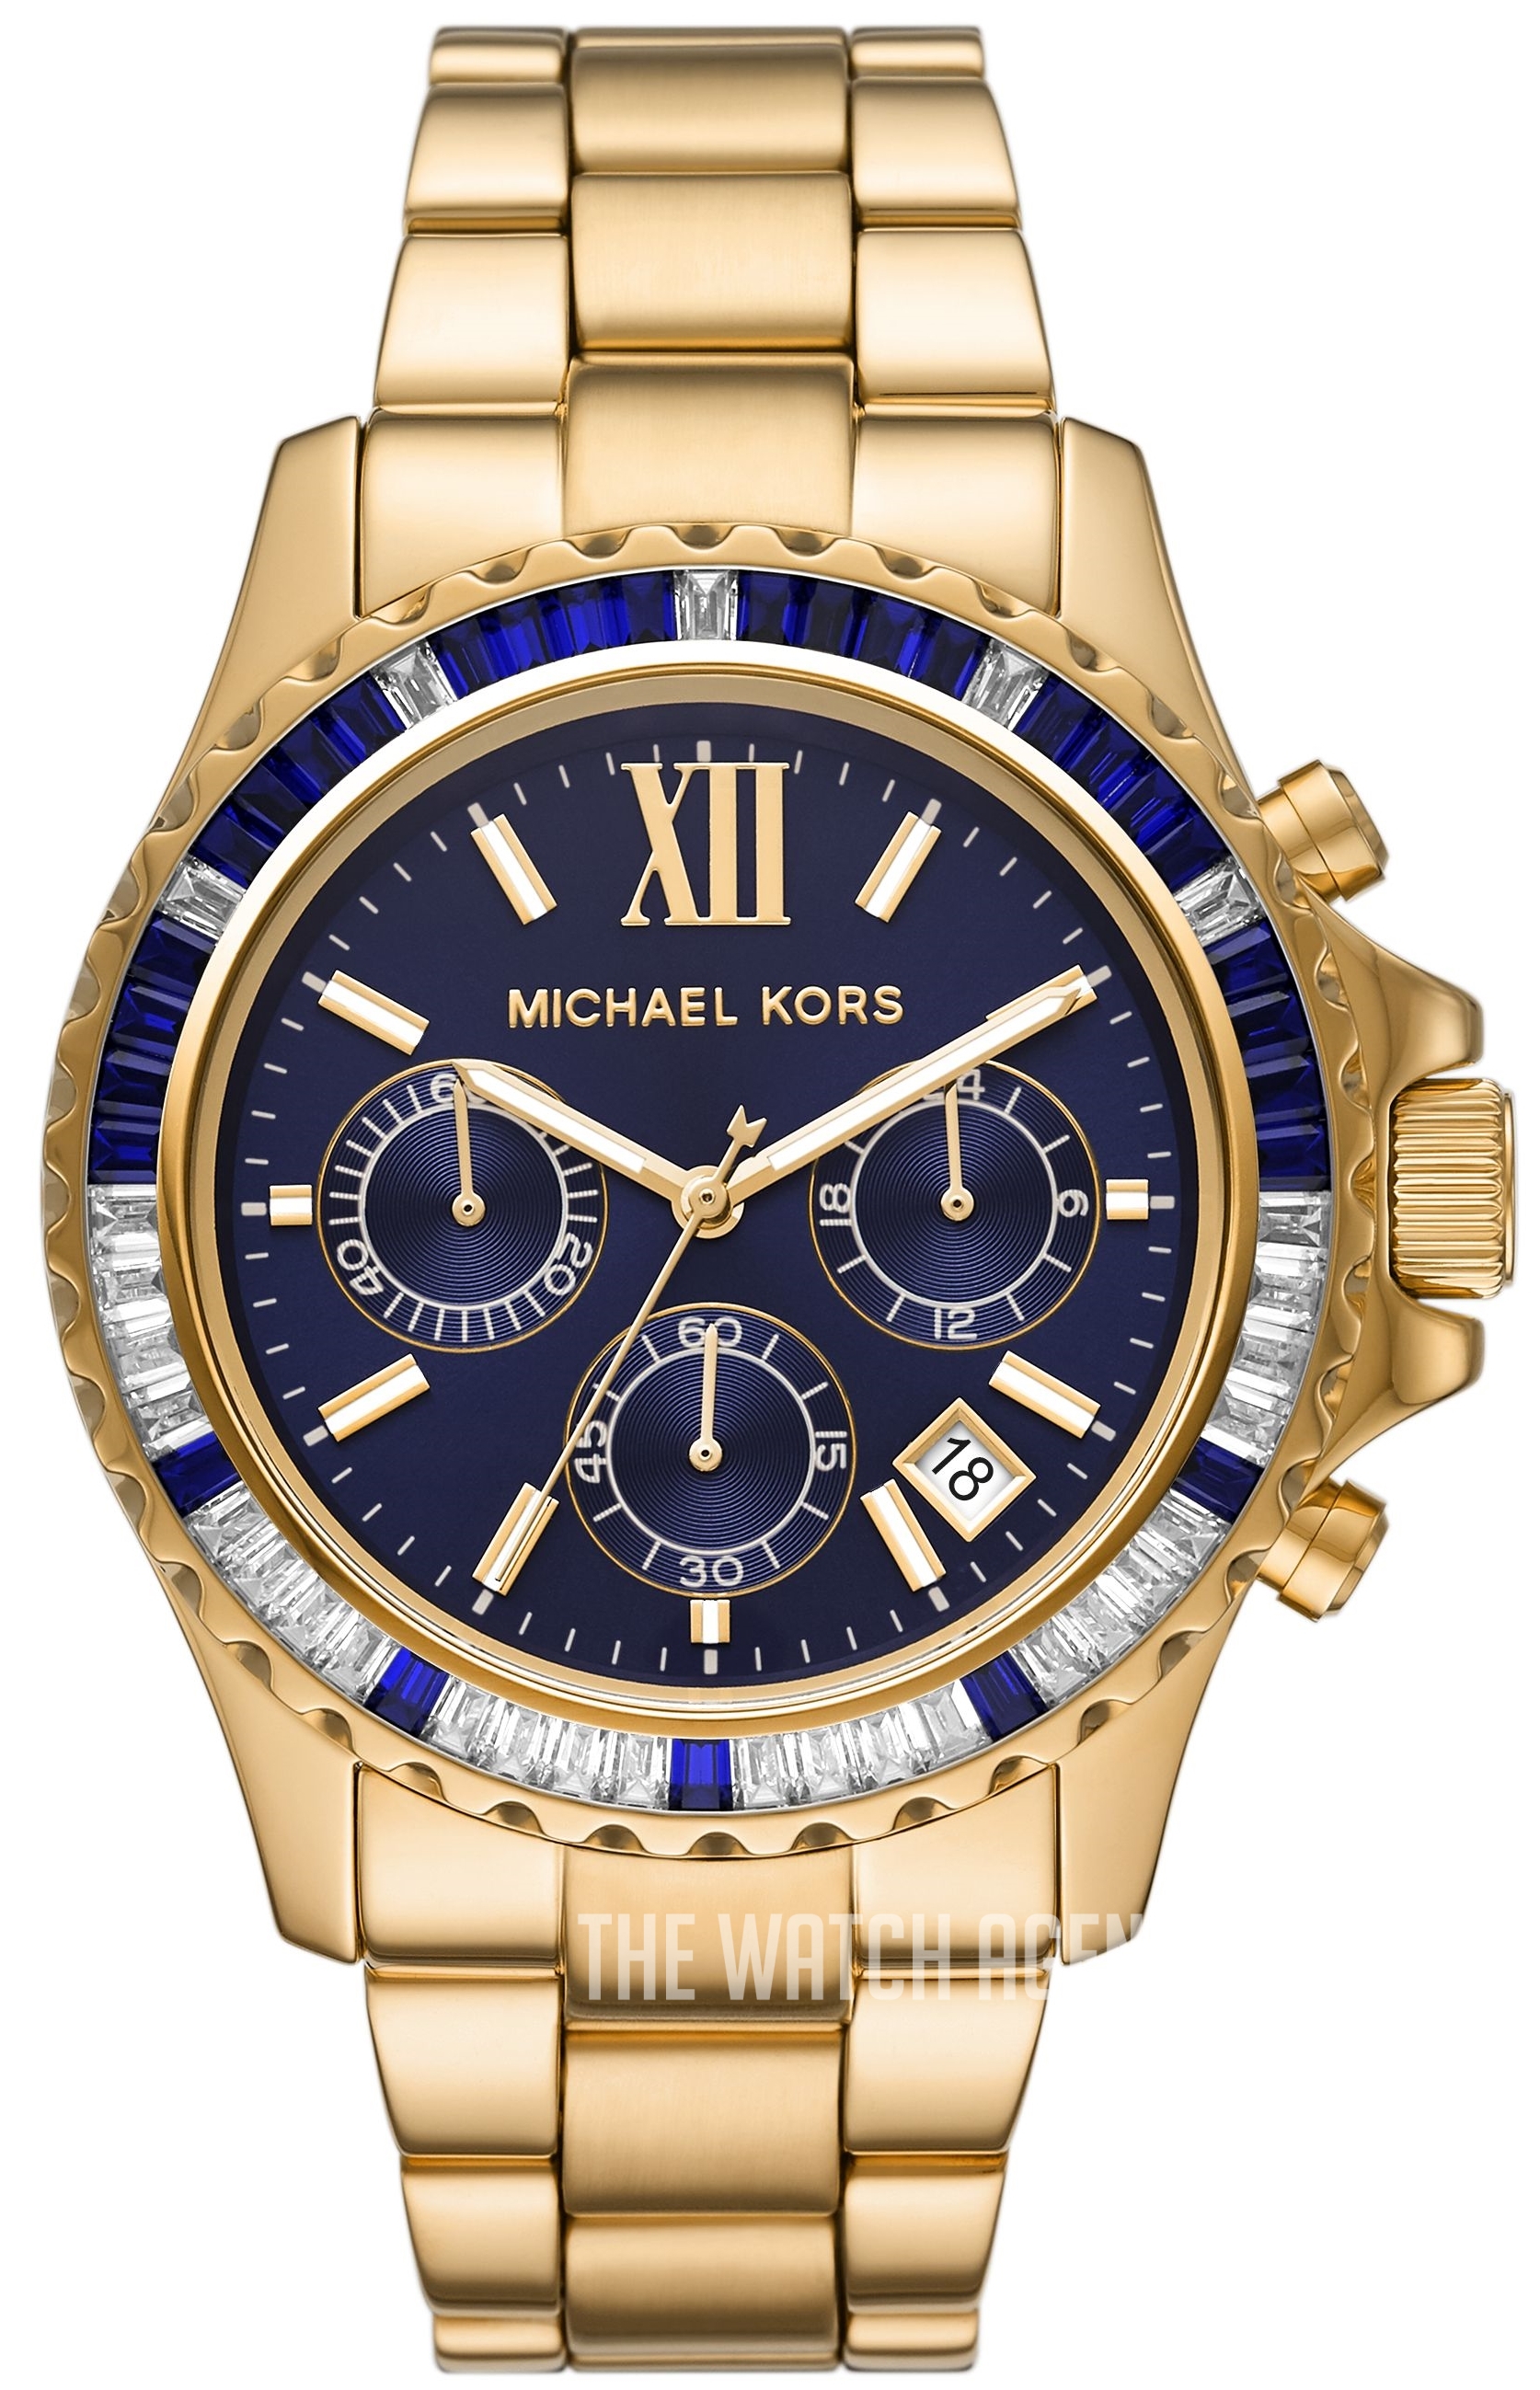 Michael Kors Lexington Chronograph Quartz Blue Dial Ladies Watch MK7218